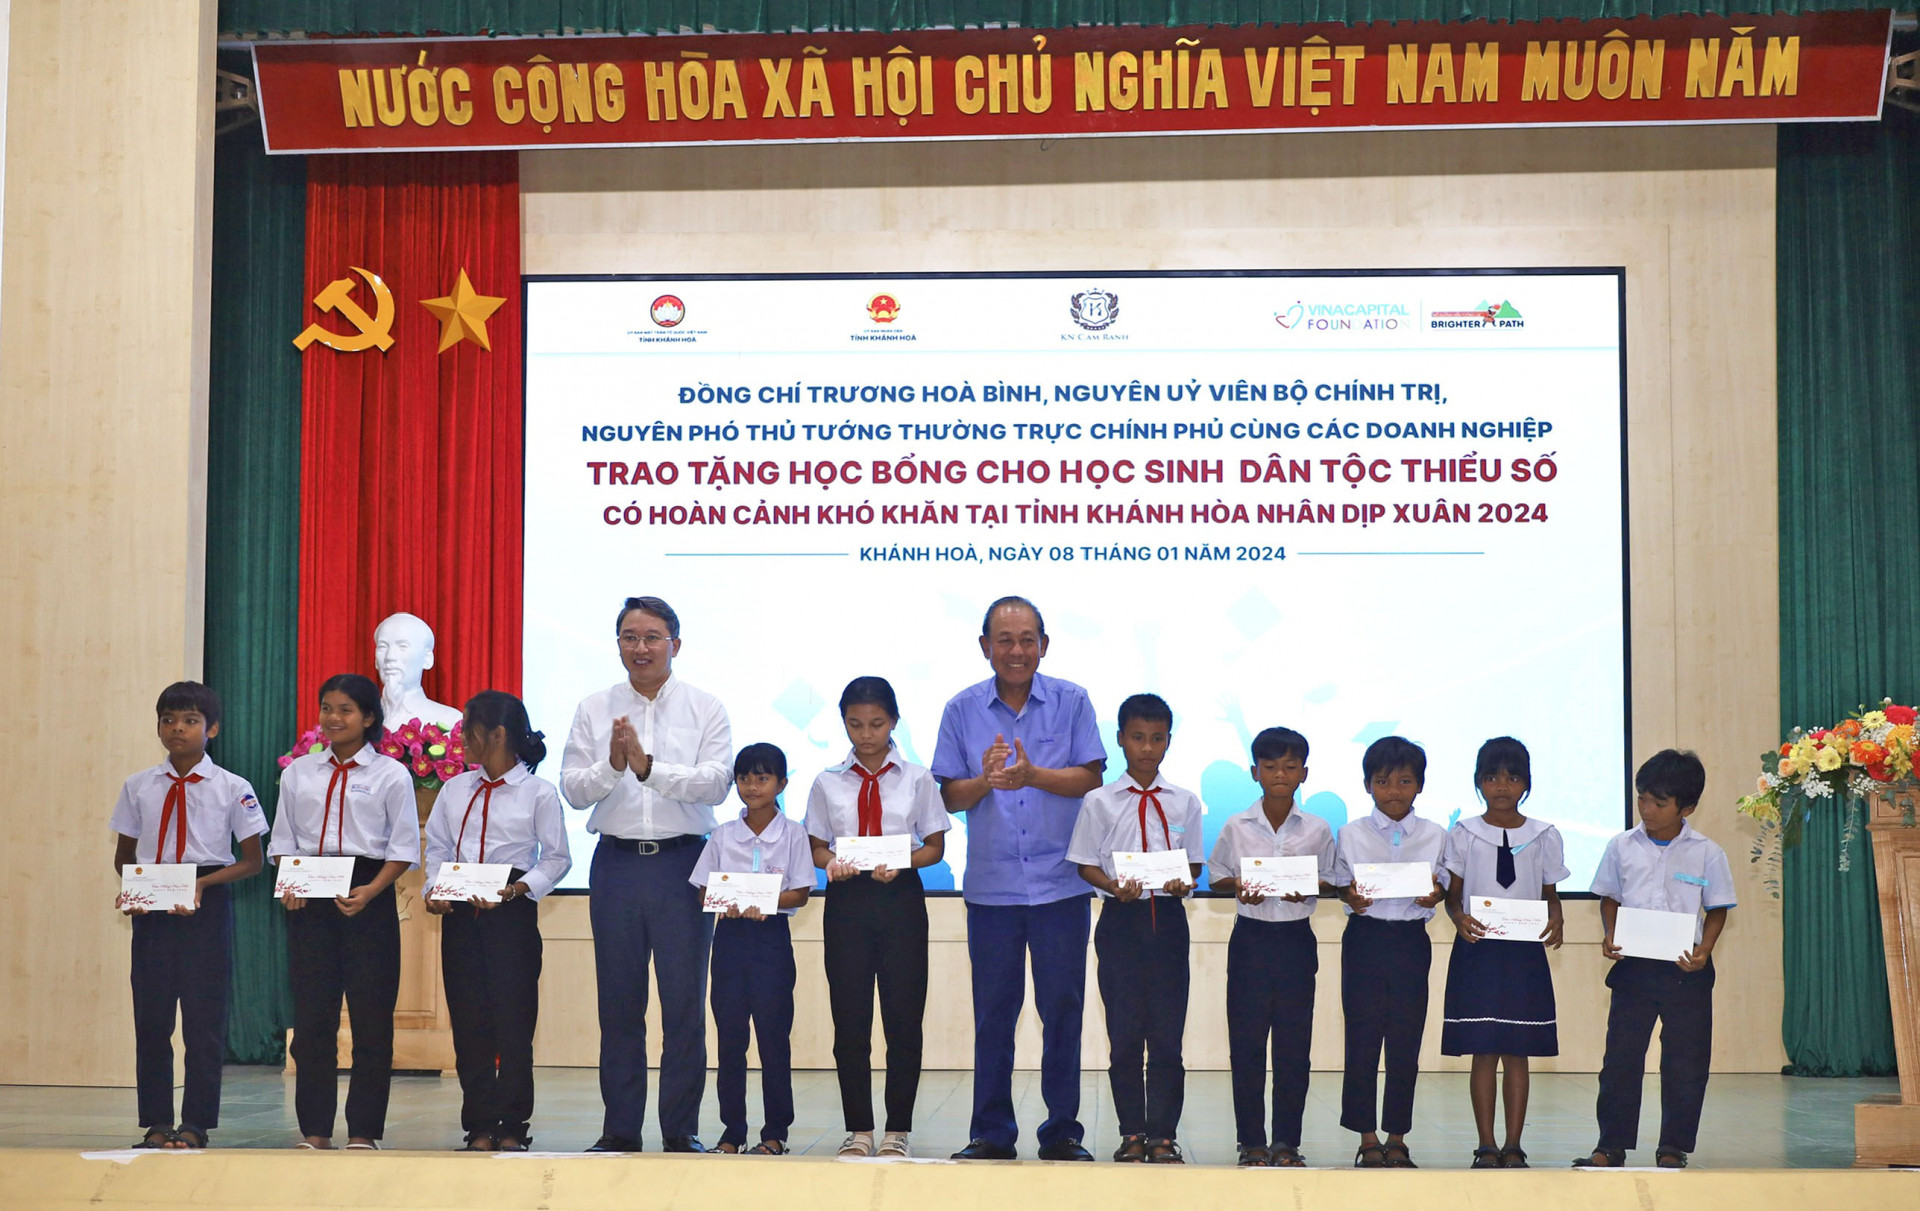 Đồng chí Trương Hòa Bình (thứ 6 từ phải sang) và đồng chí Nguyễn Hải Ninh (thứ 4 từ trái sang) trao học bổng cho học sinh.